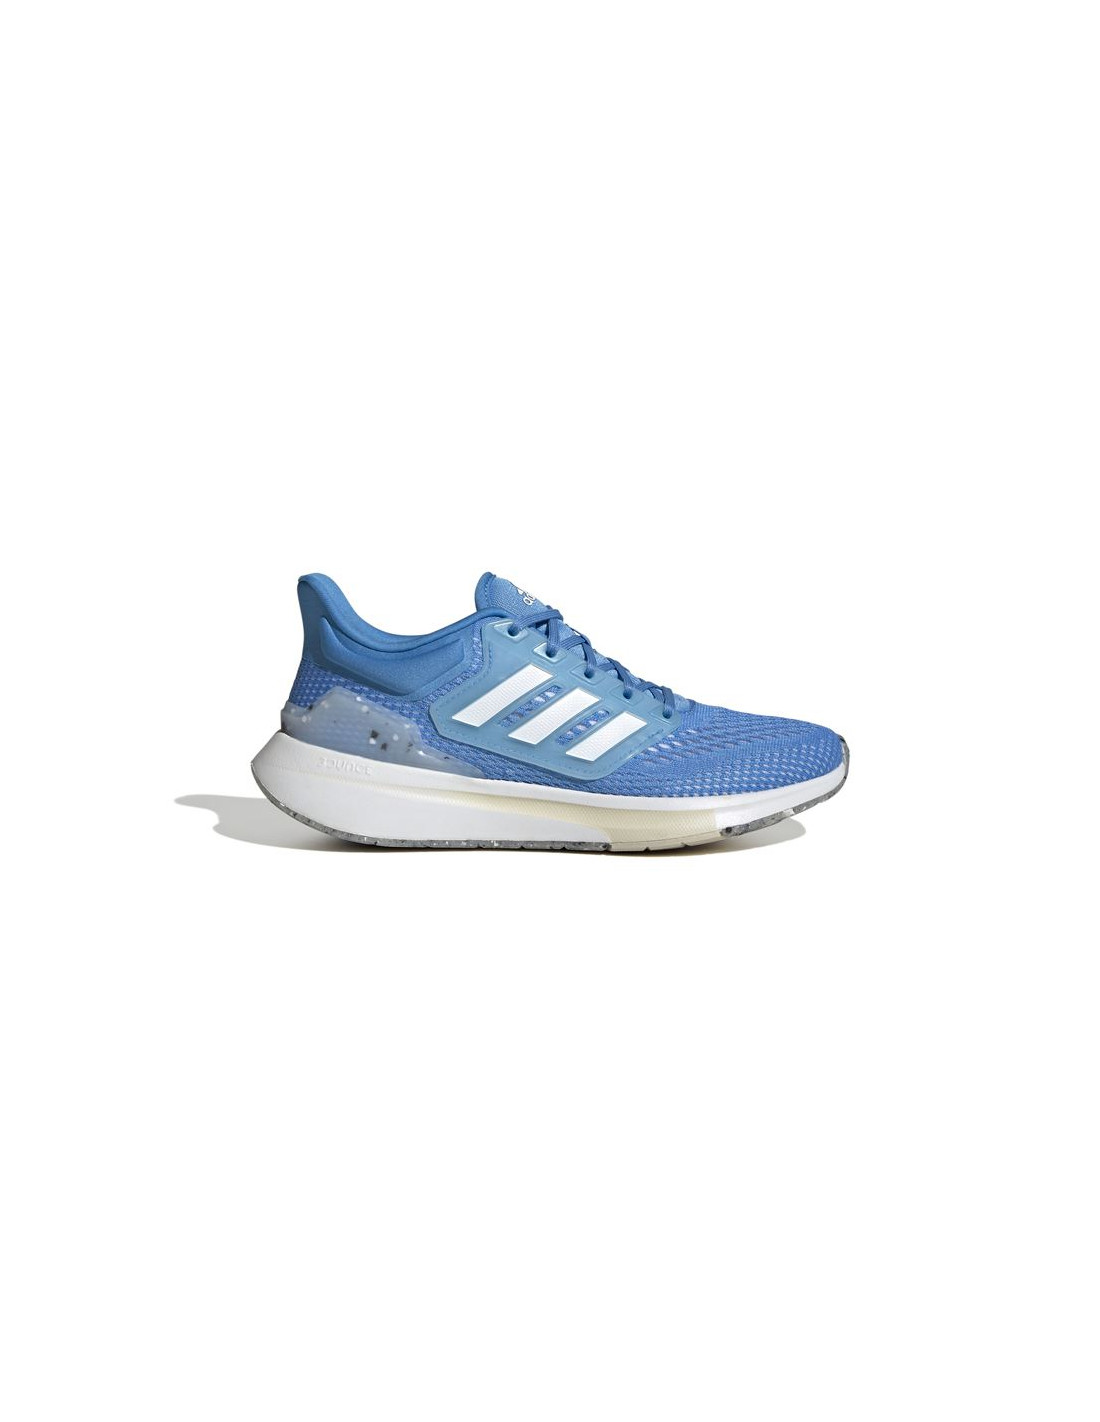 Zapatillas de running adidas eq21 mujer blue